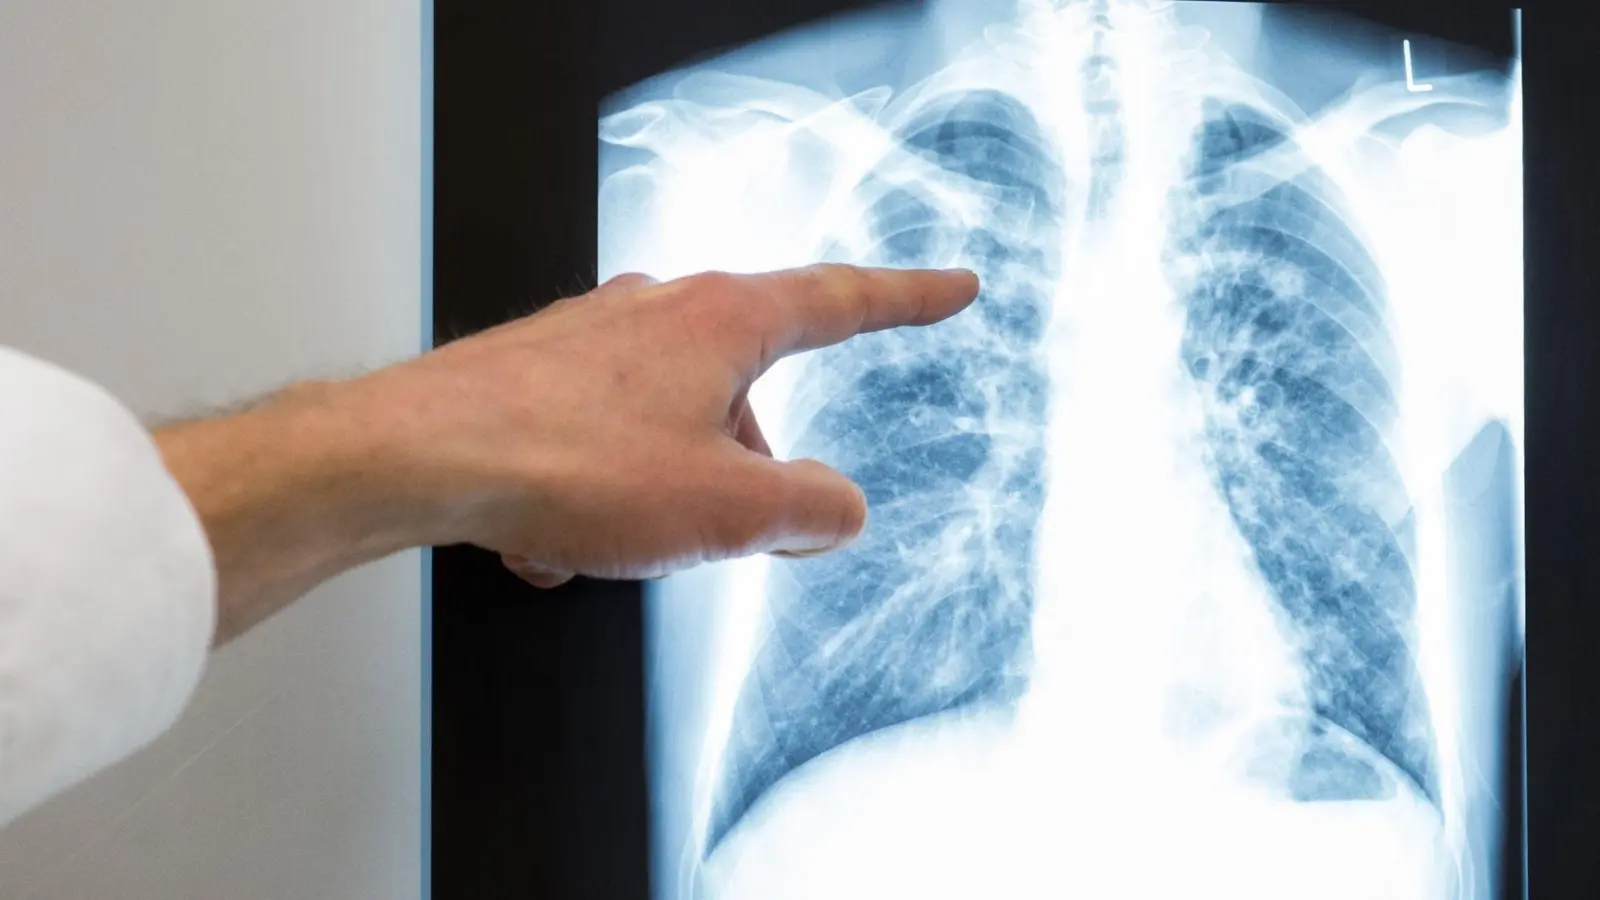 Röntgenbild einer Lunge. Im vergangenem Jahr würden rund 4480 neue Tuberkulose-Fälle in Deutschland registriert. (Foto: Silas Stein/dpa)